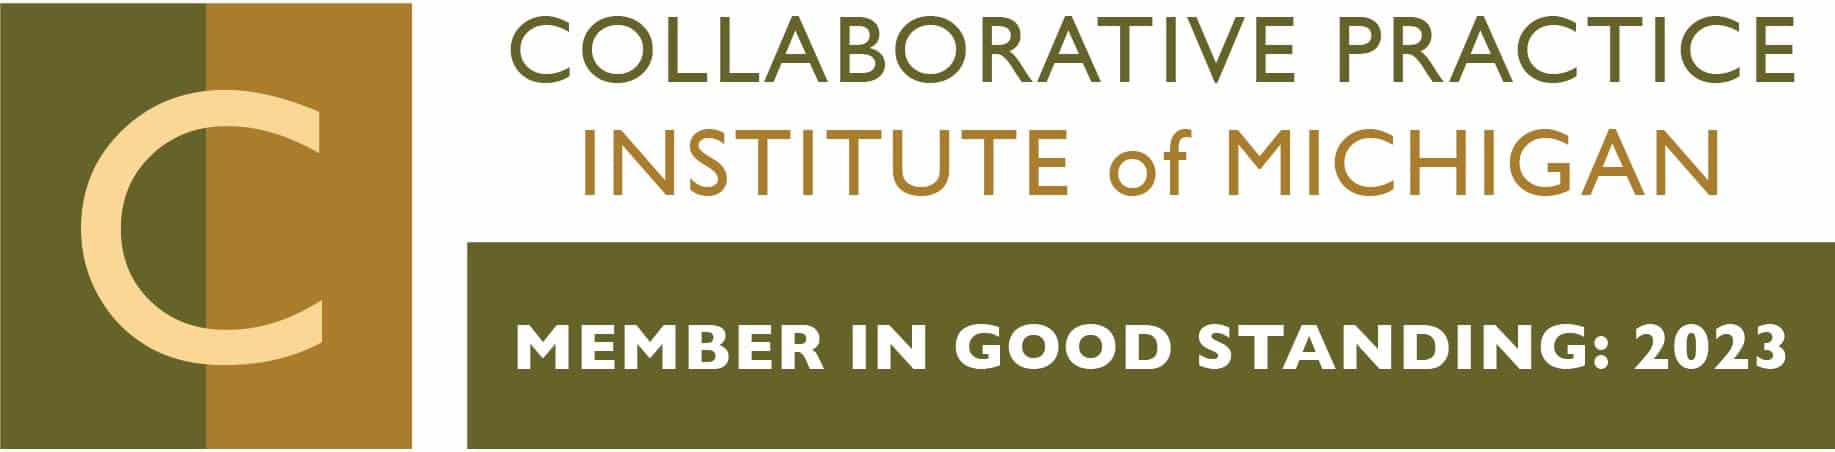 Collaborative Practice Institute of Michigan